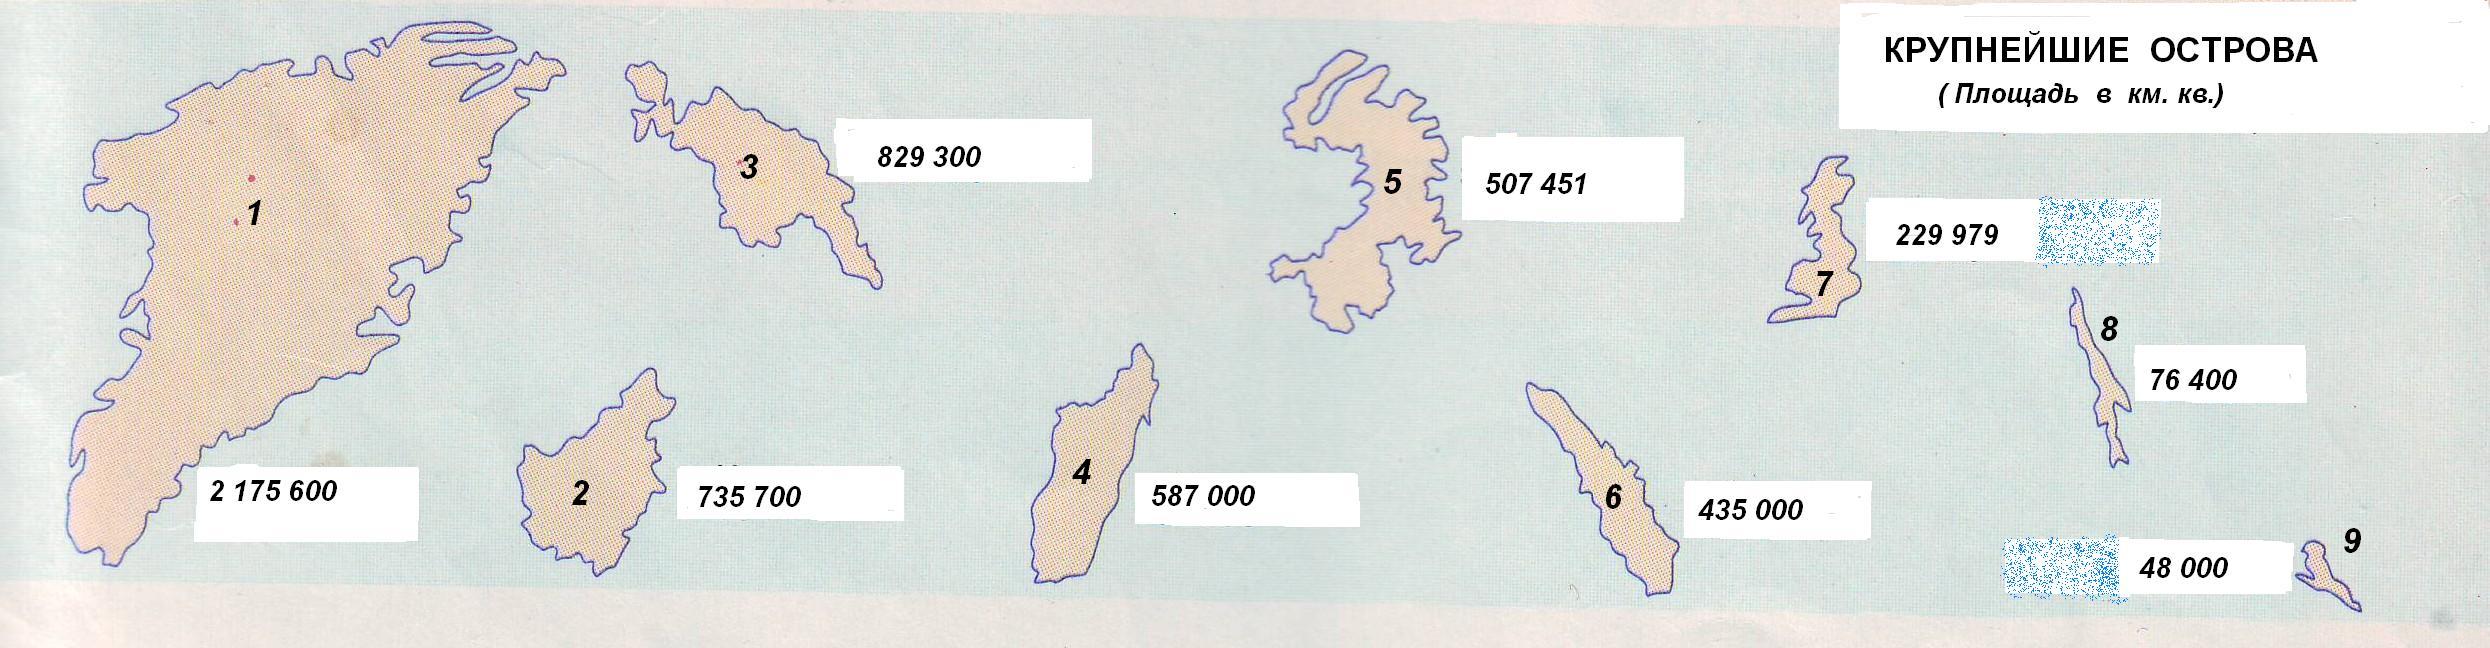 Крупнейшие острова мира на карте